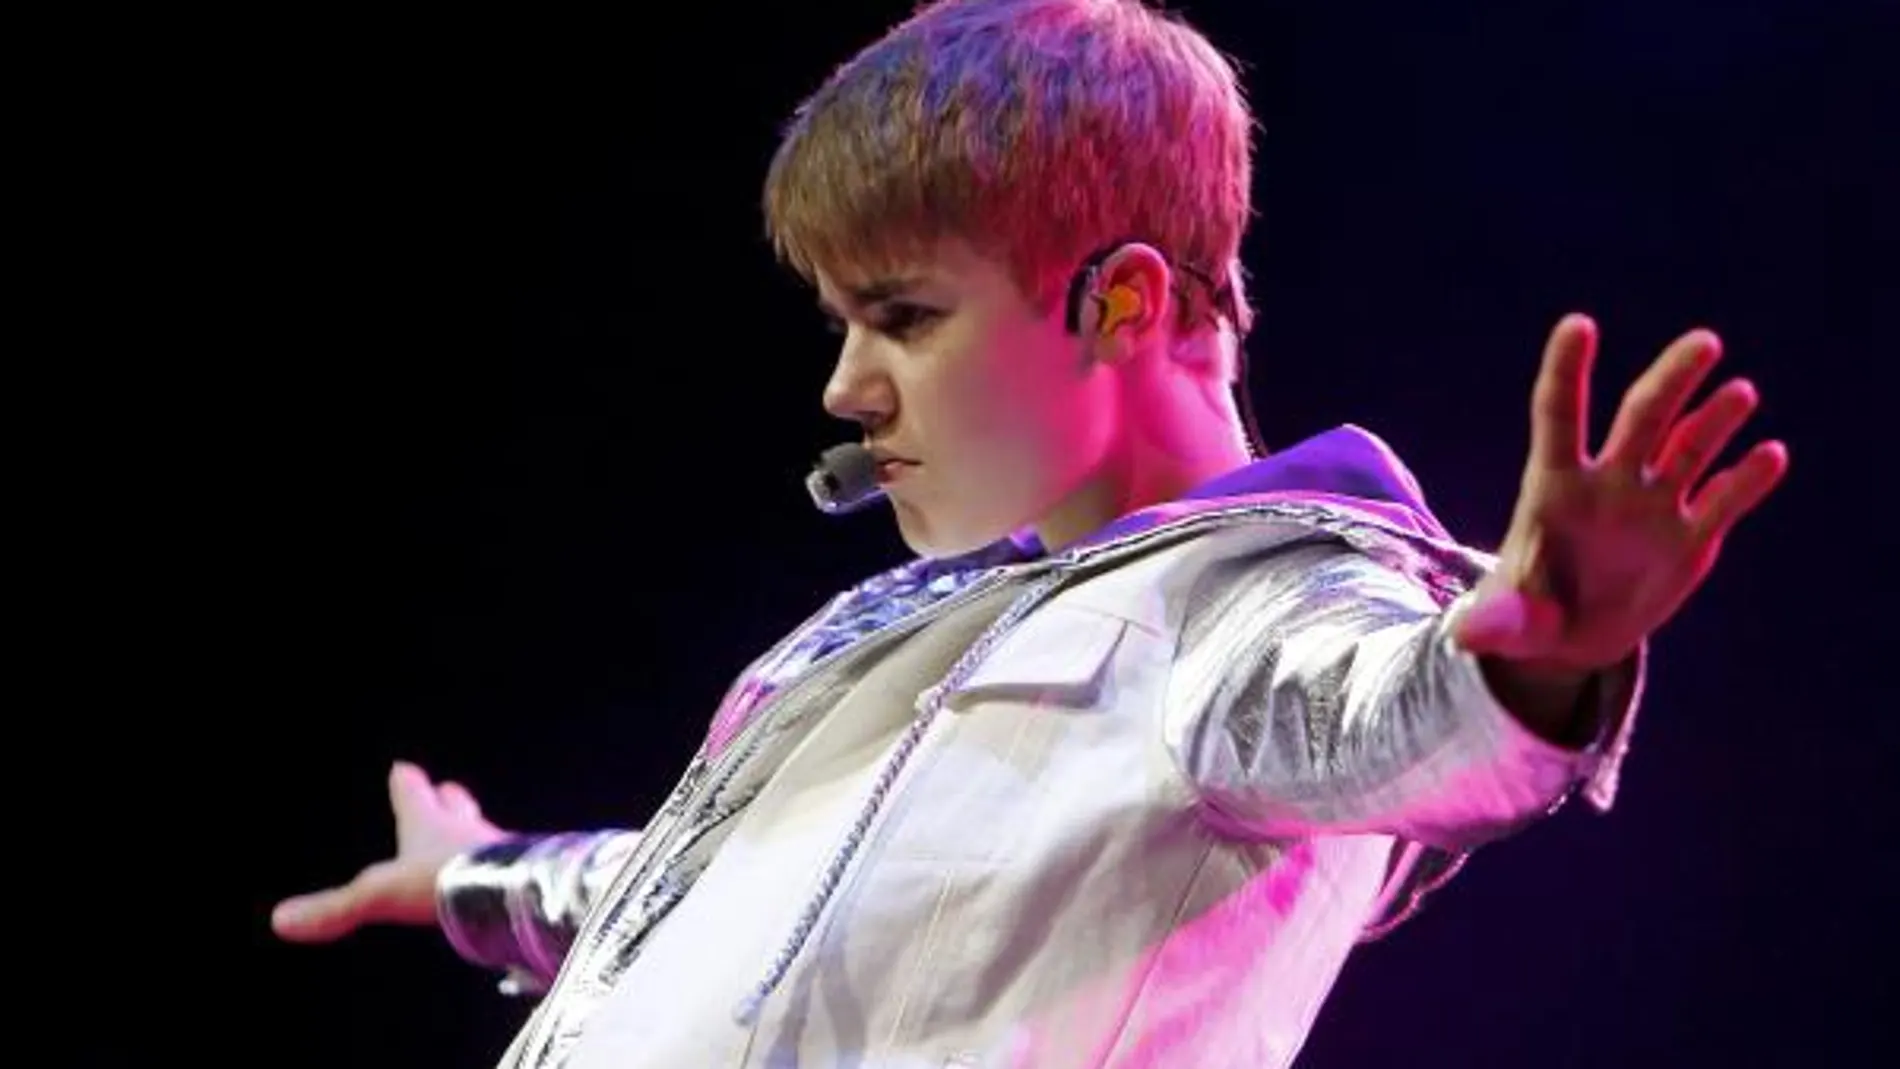 El ídolo juvenil Justin Bieber durante el concierto que ha ofrecido dentro de la gira "My World Tour", hoy en el Palacio de los Deportes de Madrid